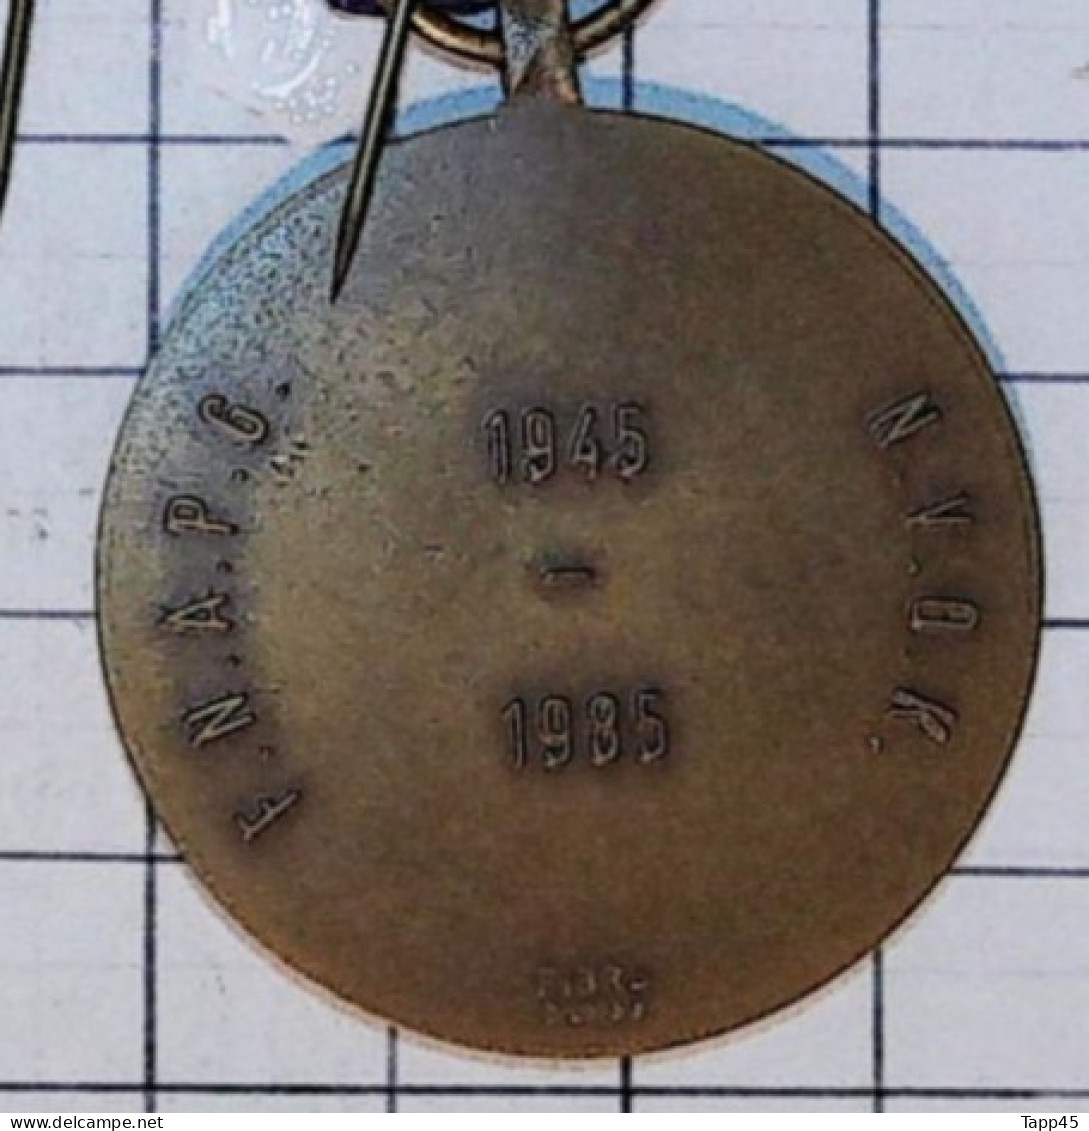 Médaille > Commémorative des 30 ans de prisonniers de Guerre  > Réf:Cl Belge  Pl 2/ 3